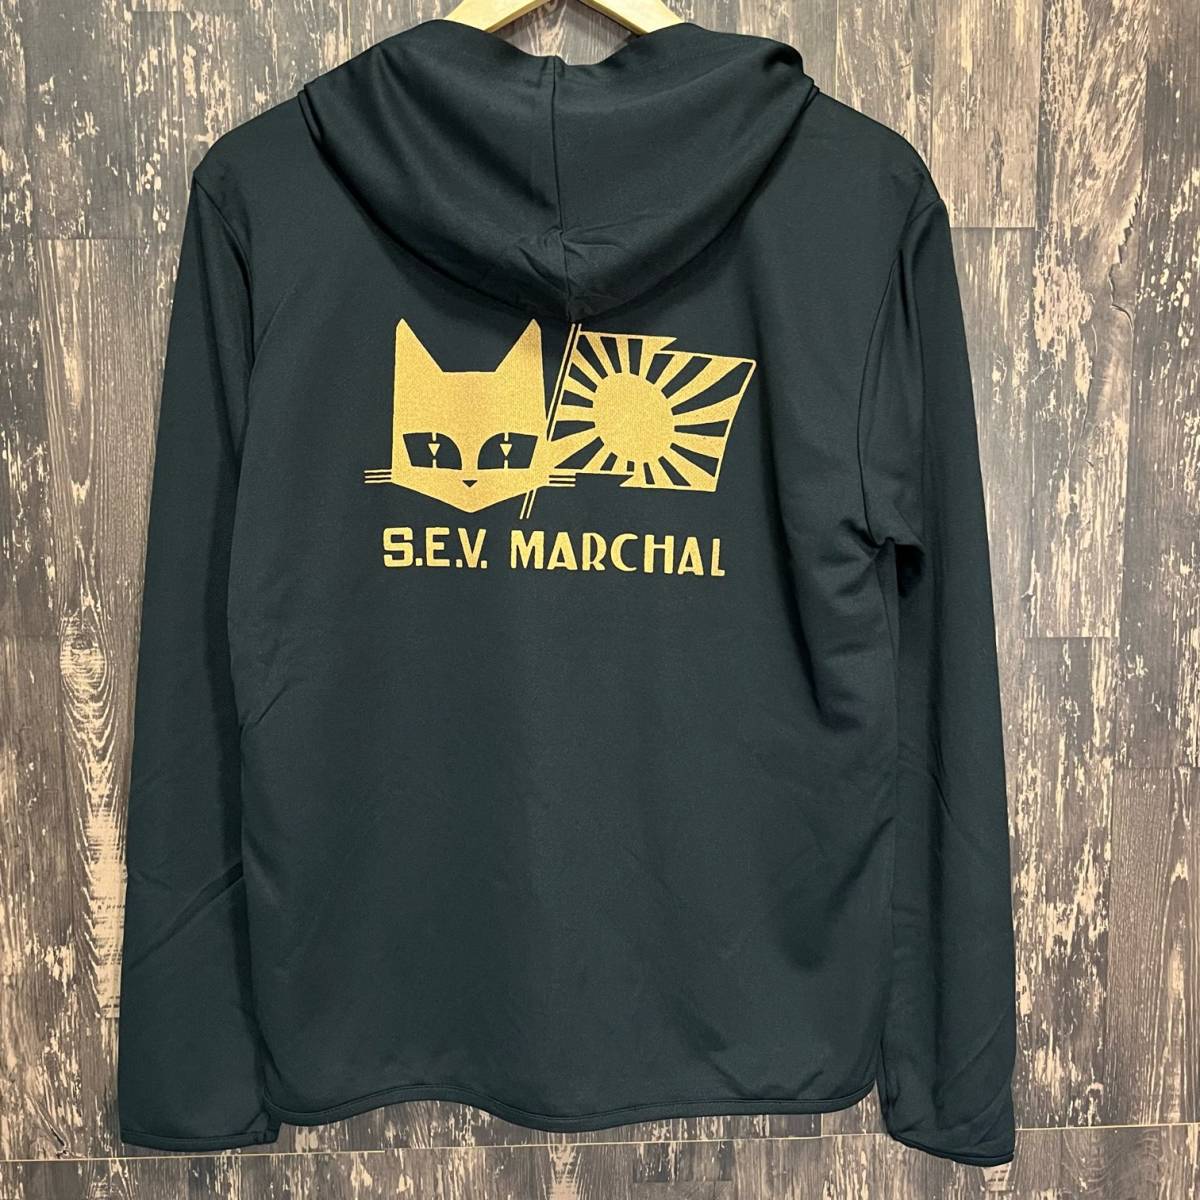 S.E.V MARCHAR・マーシャル・日章旗・ゴールド・ジップパーカー・黒・L_画像1